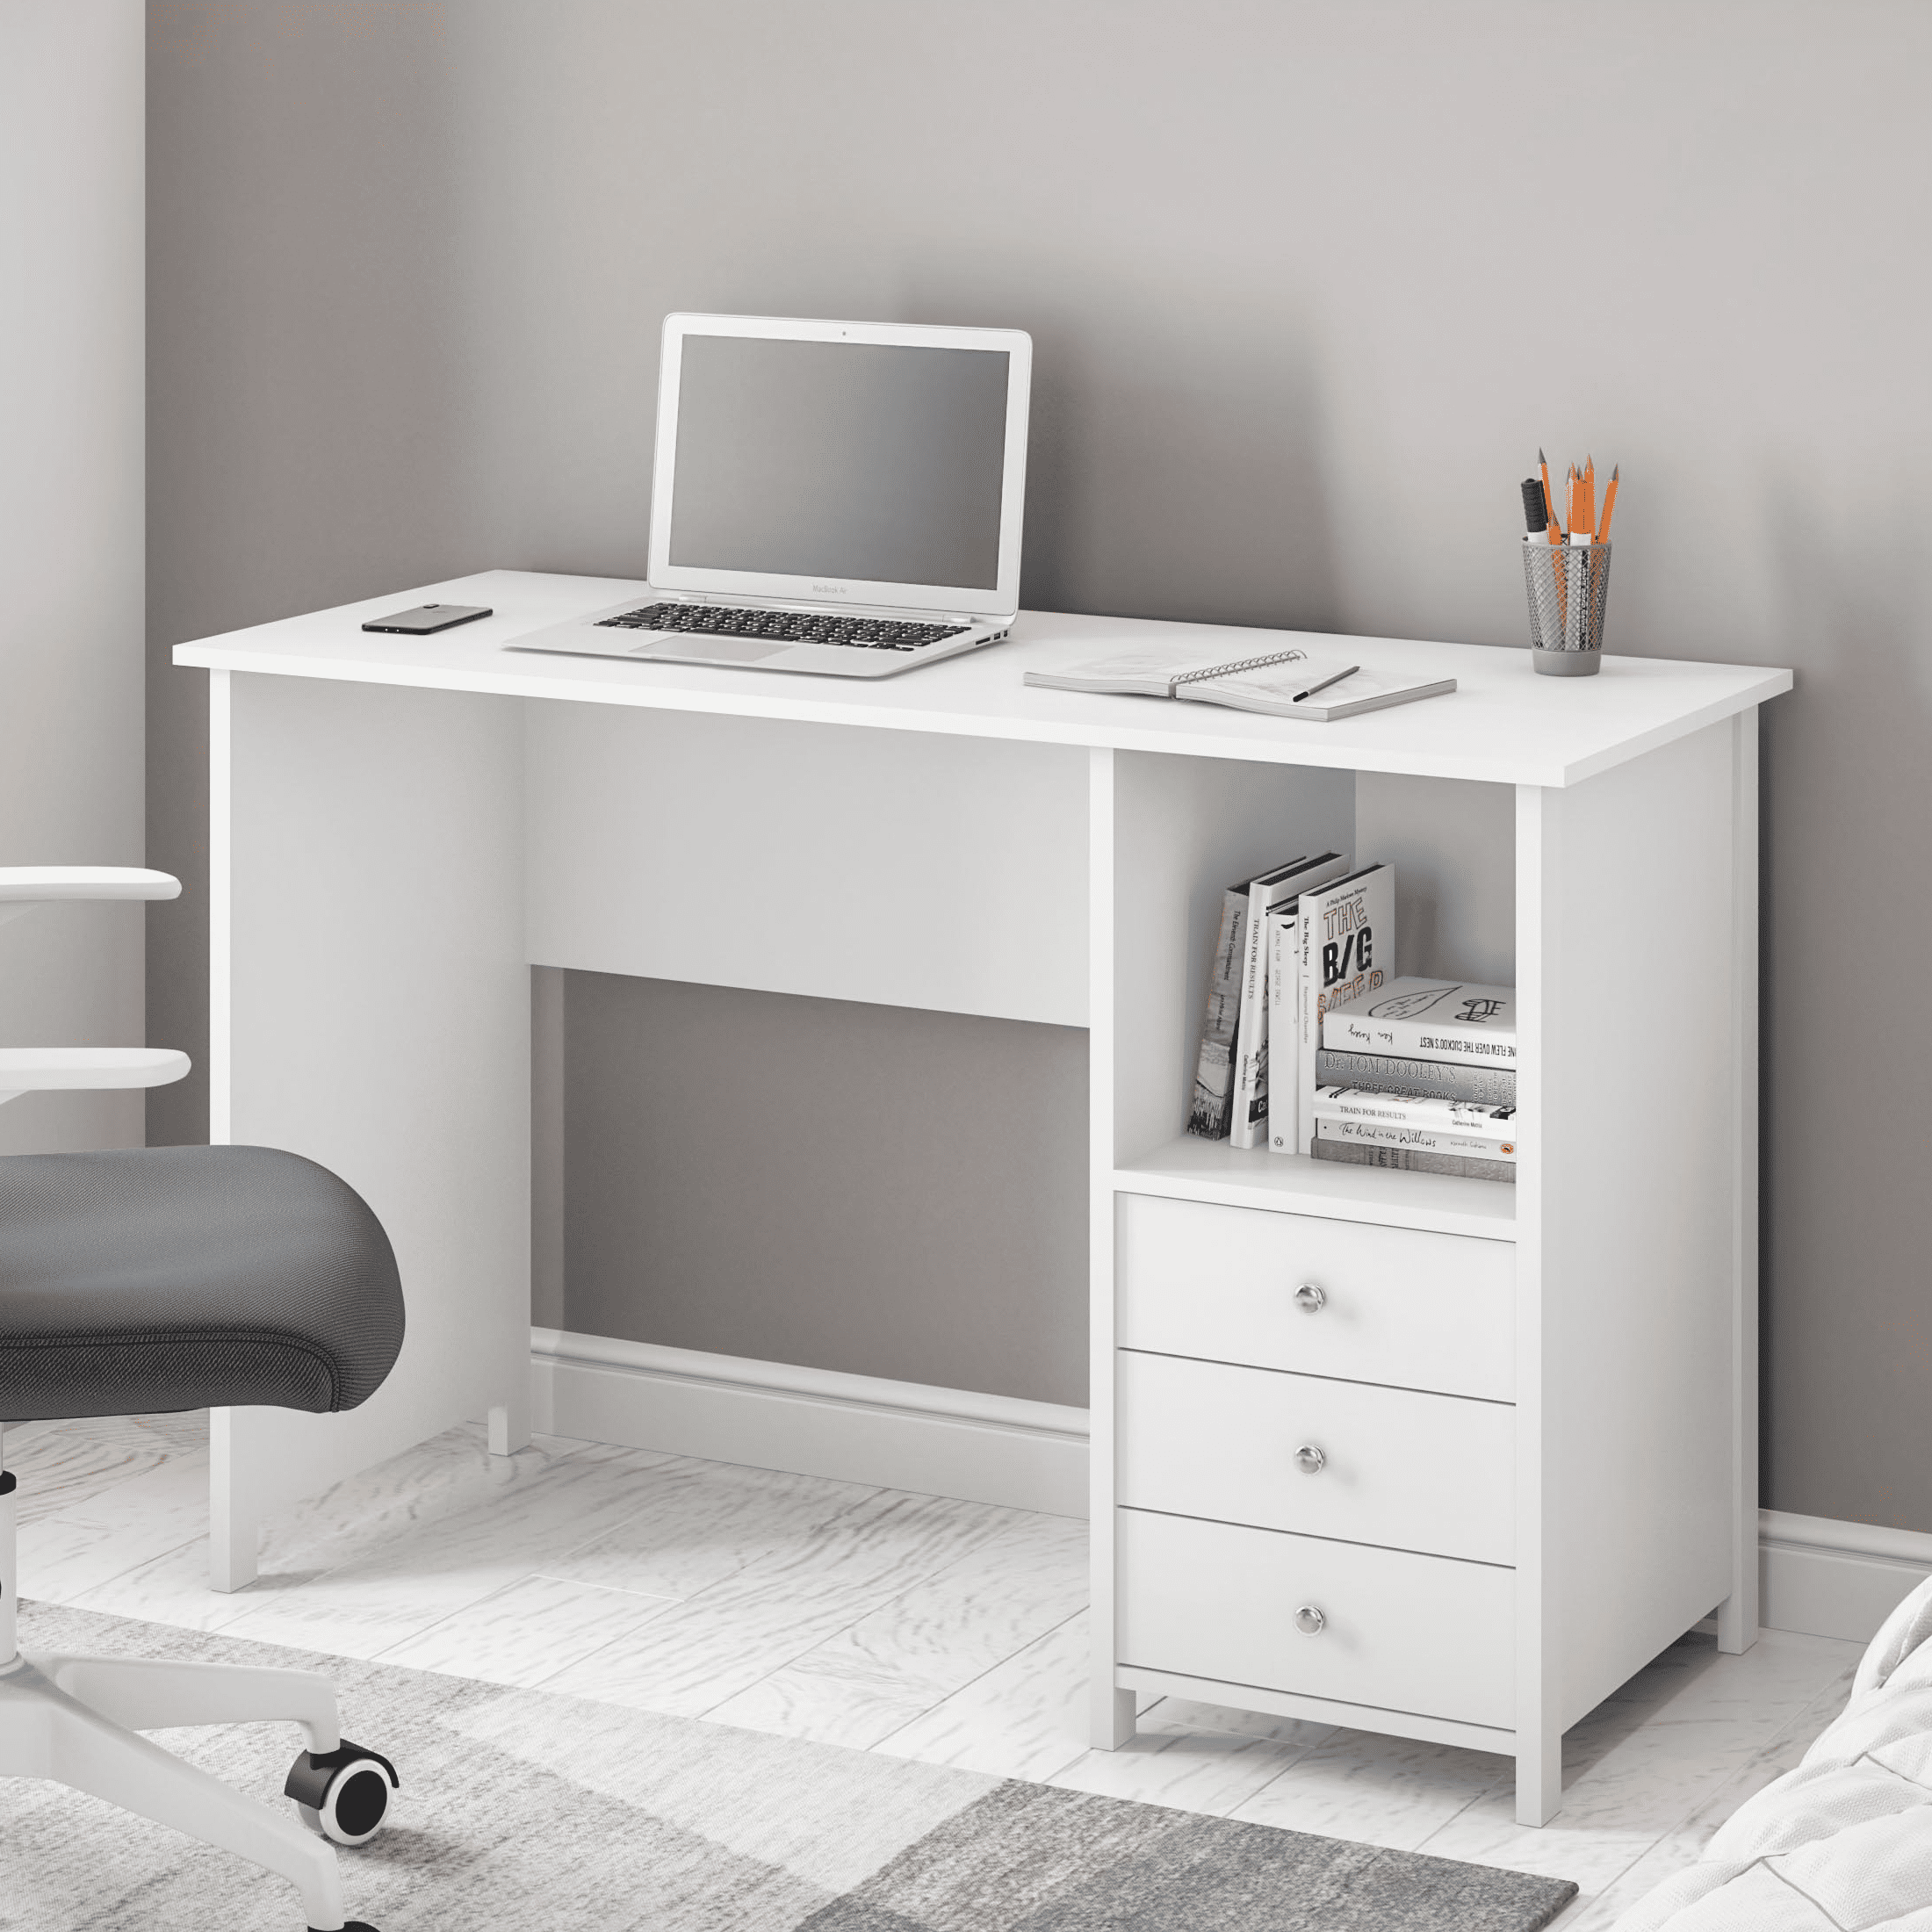 Techni Mobili Escritorio blanco con cajones: escritorio de oficina pequeño  con 3 cajones de gabinete, estante abierto y paneles de madera laminada